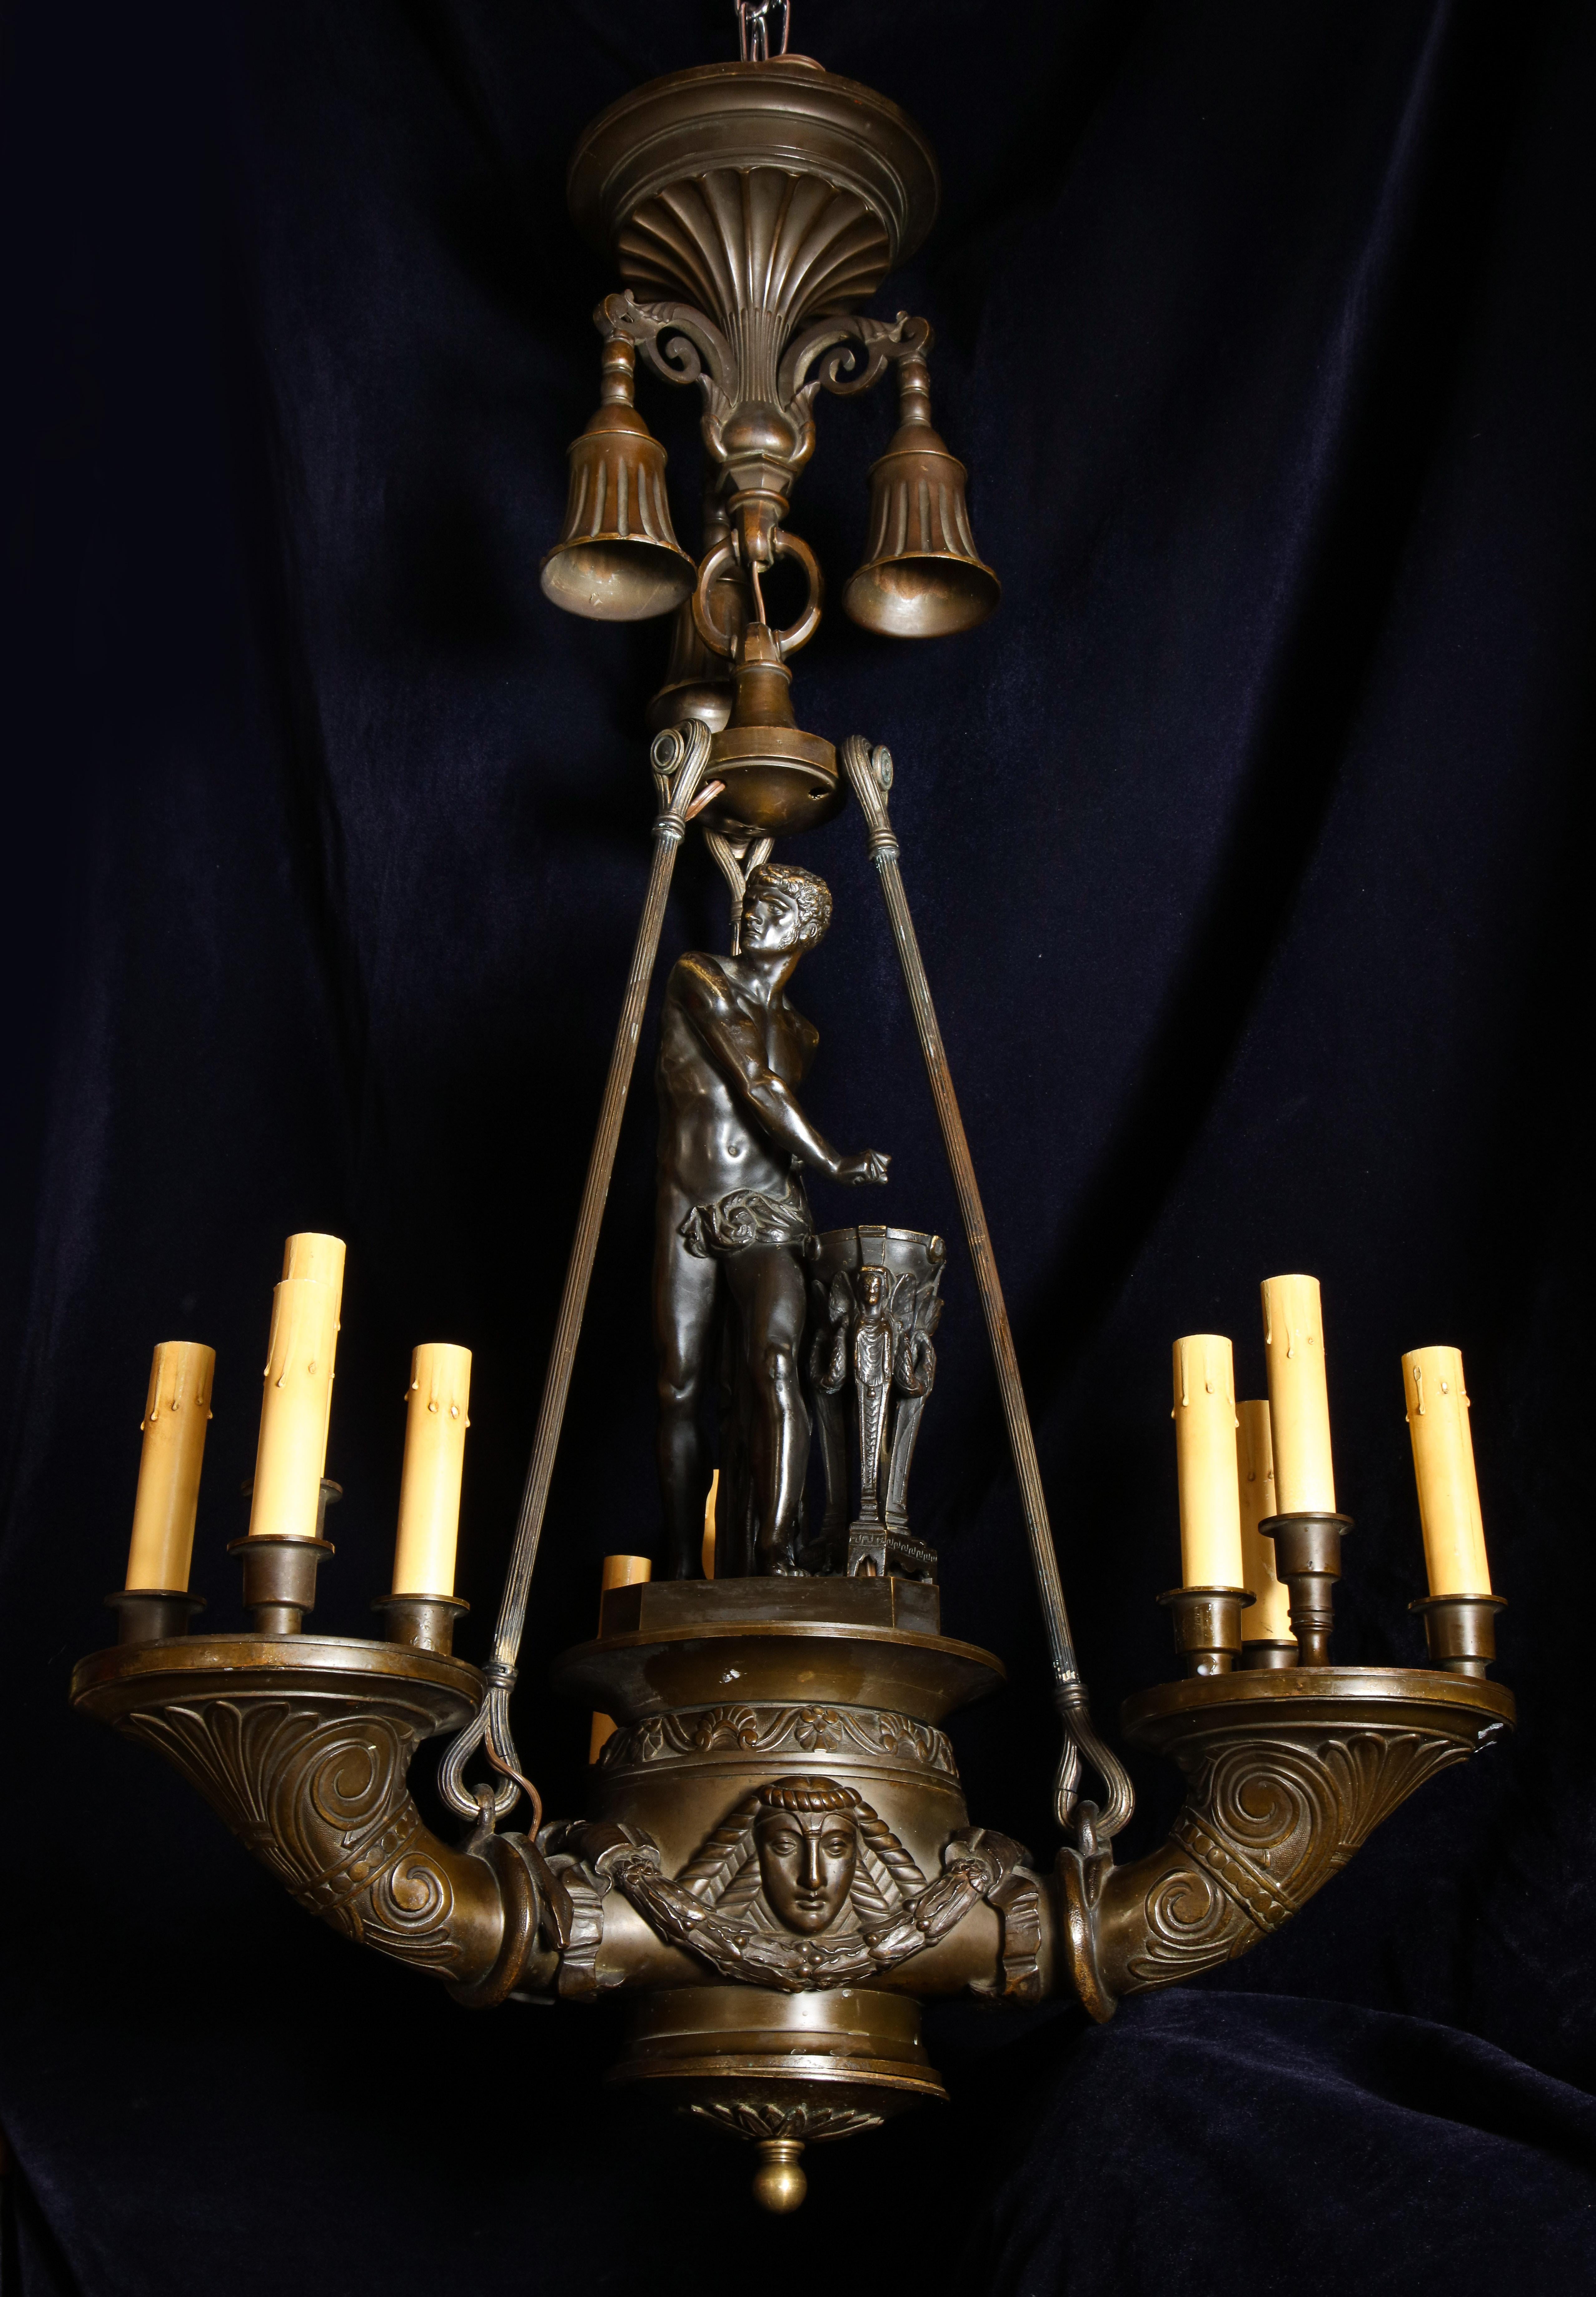 Eine spektakuläre und große antike italienische neoklassische patiniert Bronze Multi-Licht figuralen Kronleuchter von herrlichen Details mit einer zentralen Figur eines neoklassischen Mannes und weiter mit neoklassischen figuralen Masken geschmückt.